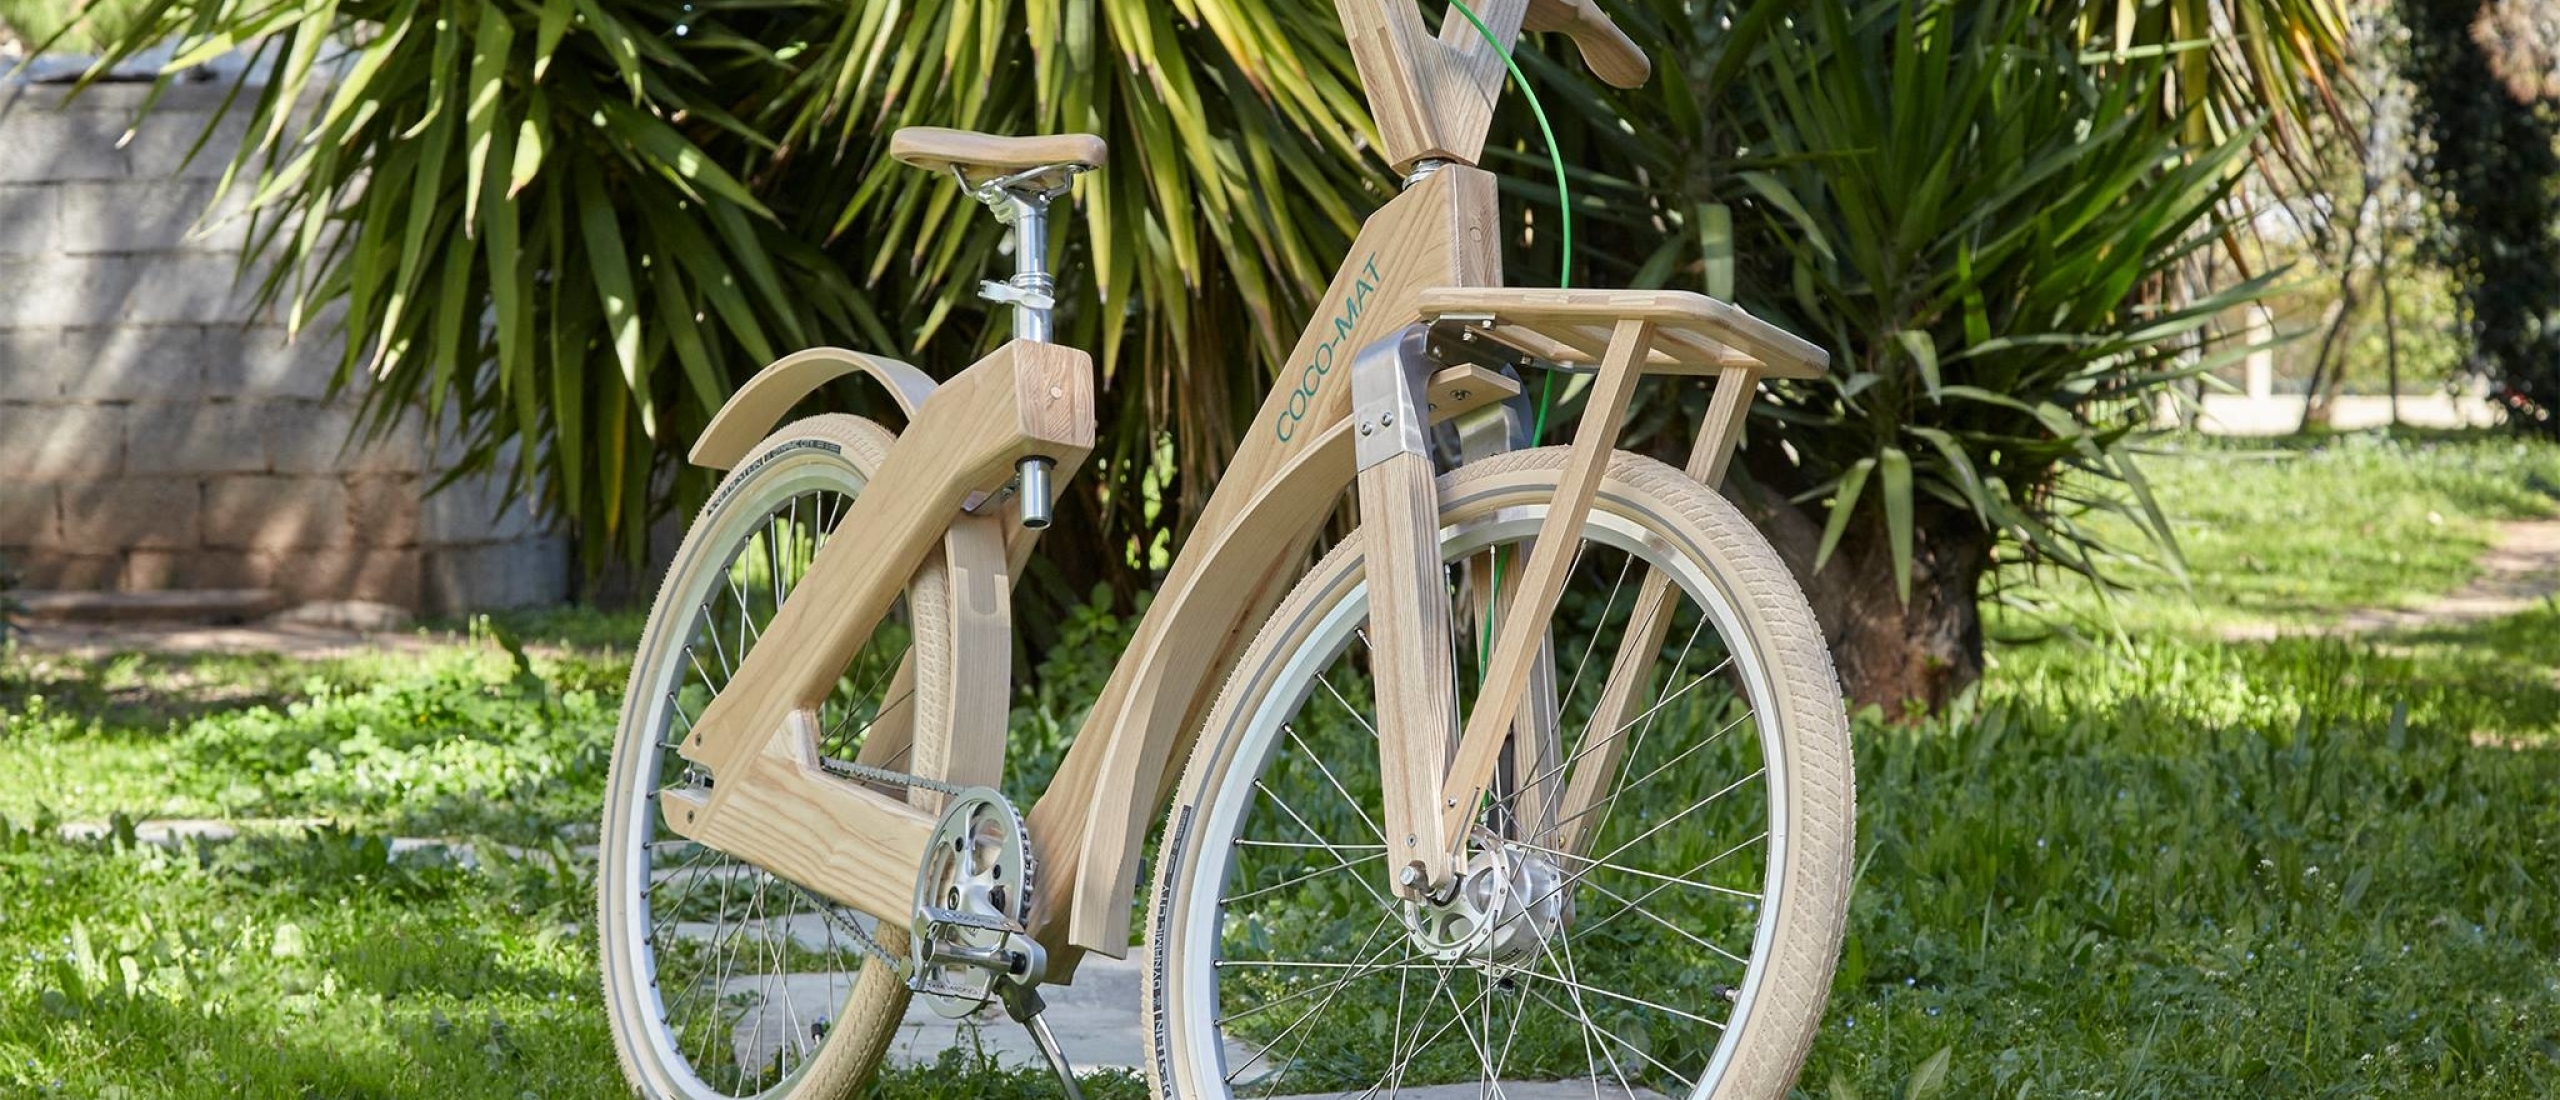 heilig verwennen Fantastisch Een houten fiets zwaar? Welnee!